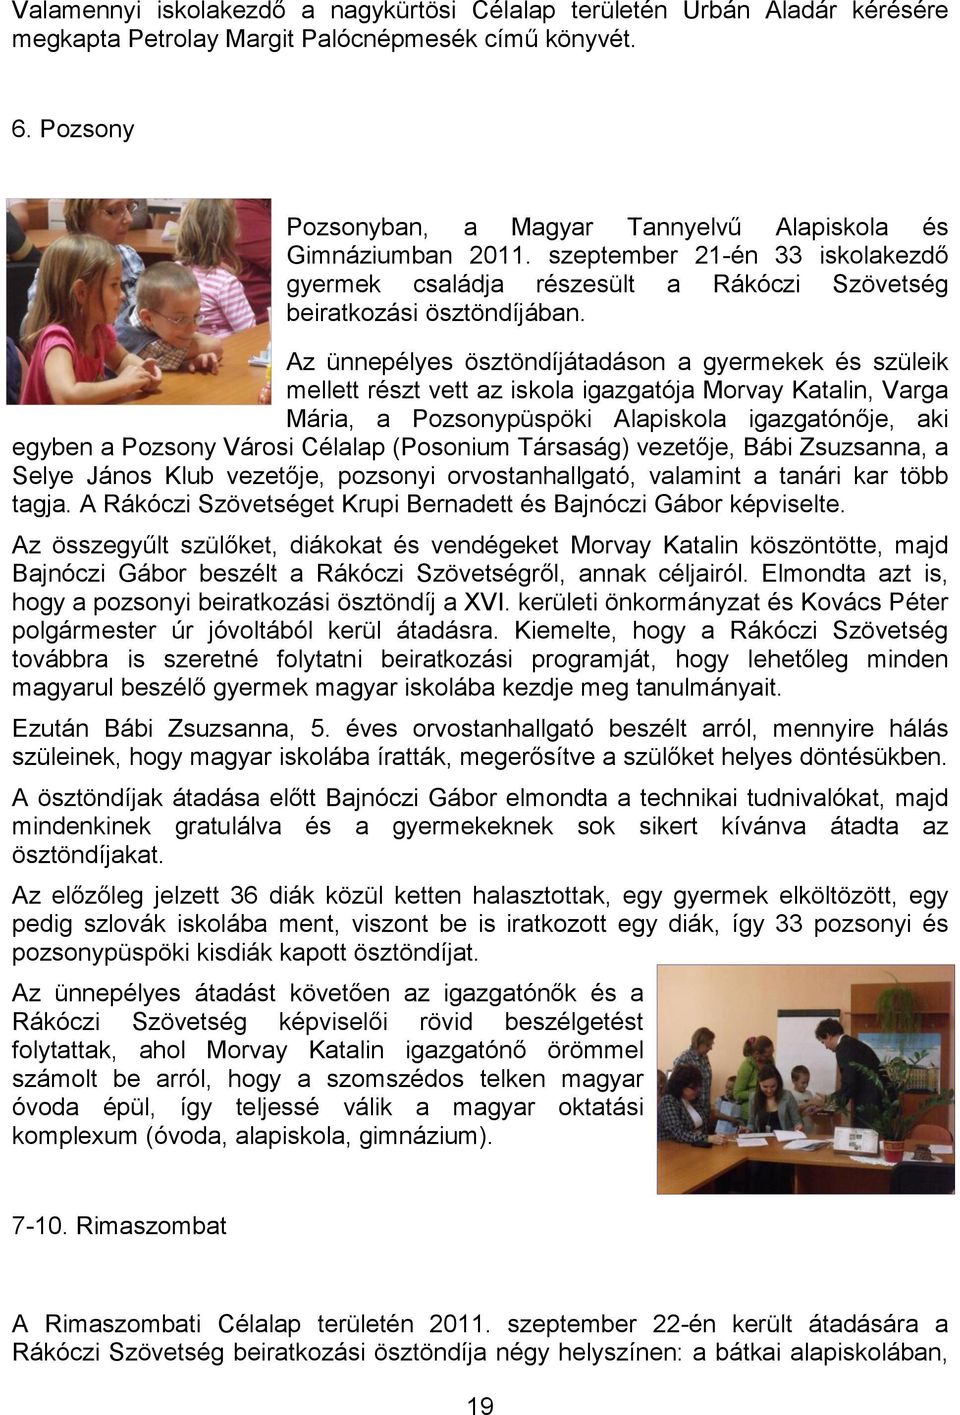 Az ünnepélyes ösztöndíjátadáson a gyermekek és szüleik mellett részt vett az iskola igazgatója Morvay Katalin, Varga Mária, a Pozsonypüspöki Alapiskola igazgatónője, aki egyben a Pozsony Városi